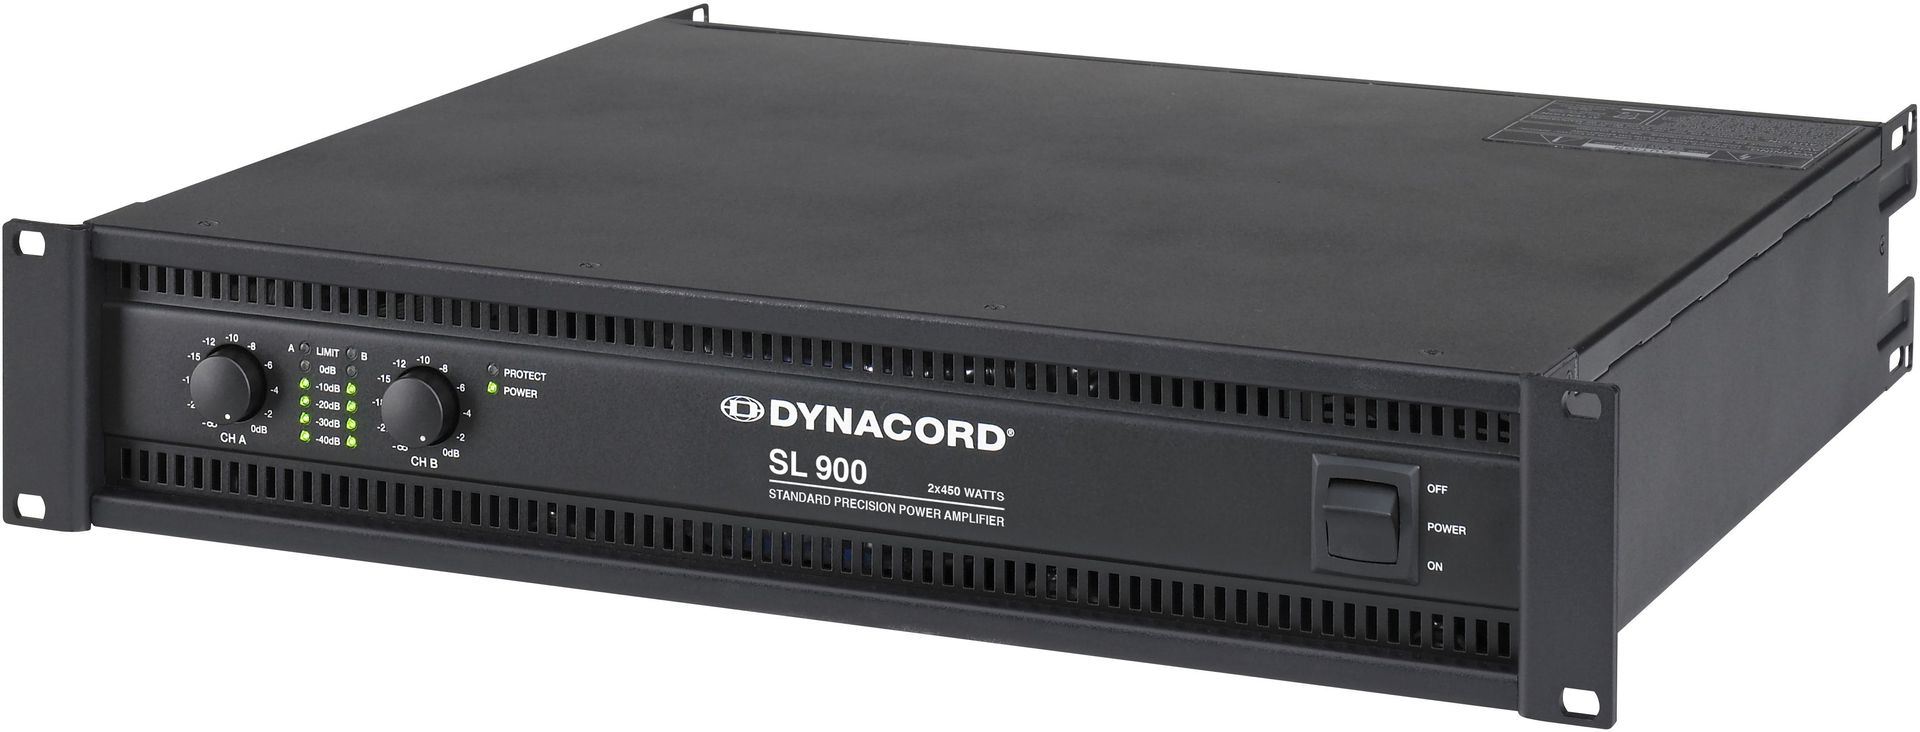 Dynacord SL 900 Endstufe  2x450 Watt 2HE Power Amp 900 W 